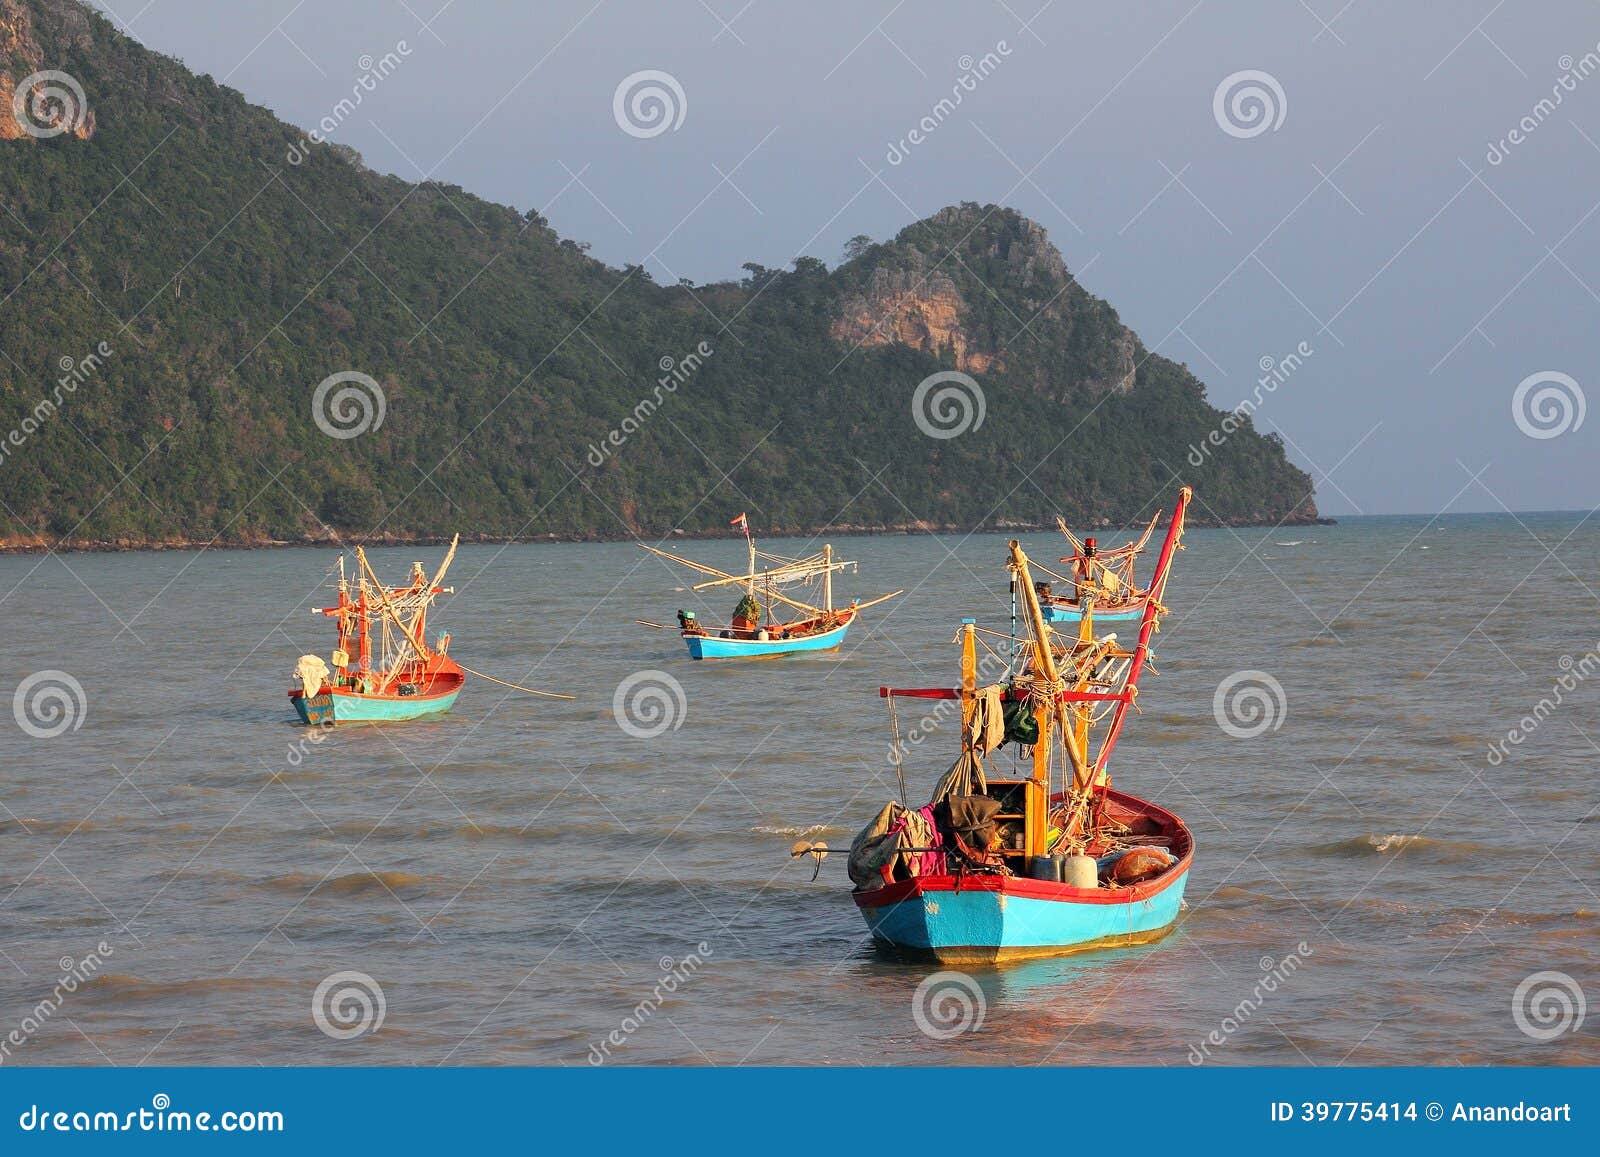 Fisherboats i aftonljuset. Tre coloful fisherboats svävar i havet, i Thailand nära Prachuab. Fartygen tänds av det varma ljuset av aftonsolen. I bakgrunden är en ö.